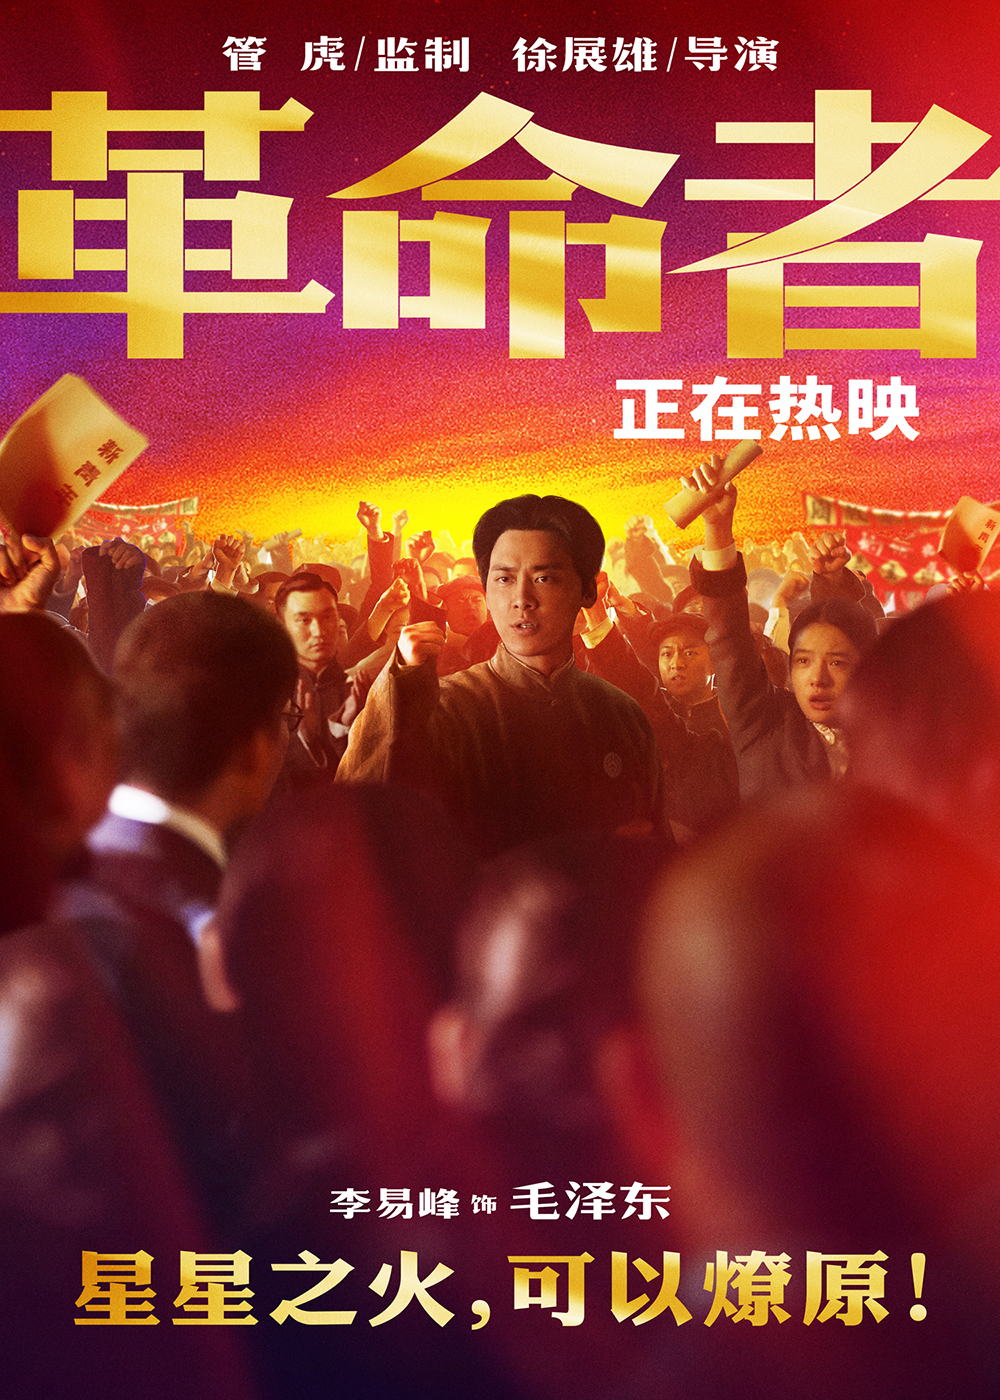 《革命者》星火版海报-李易峰-2